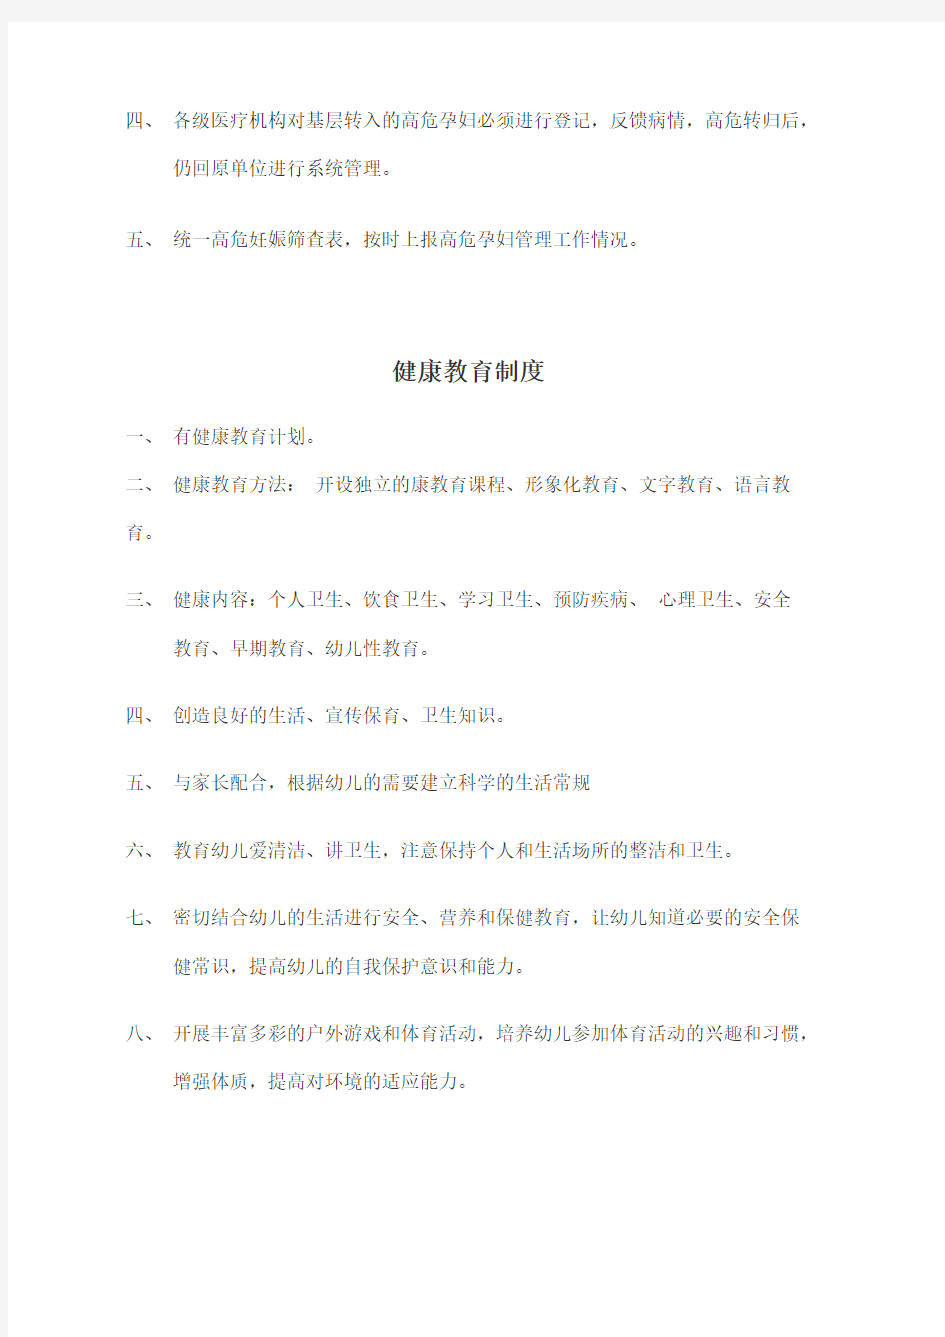 深圳市妇幼卫生监测预警通报工作制度